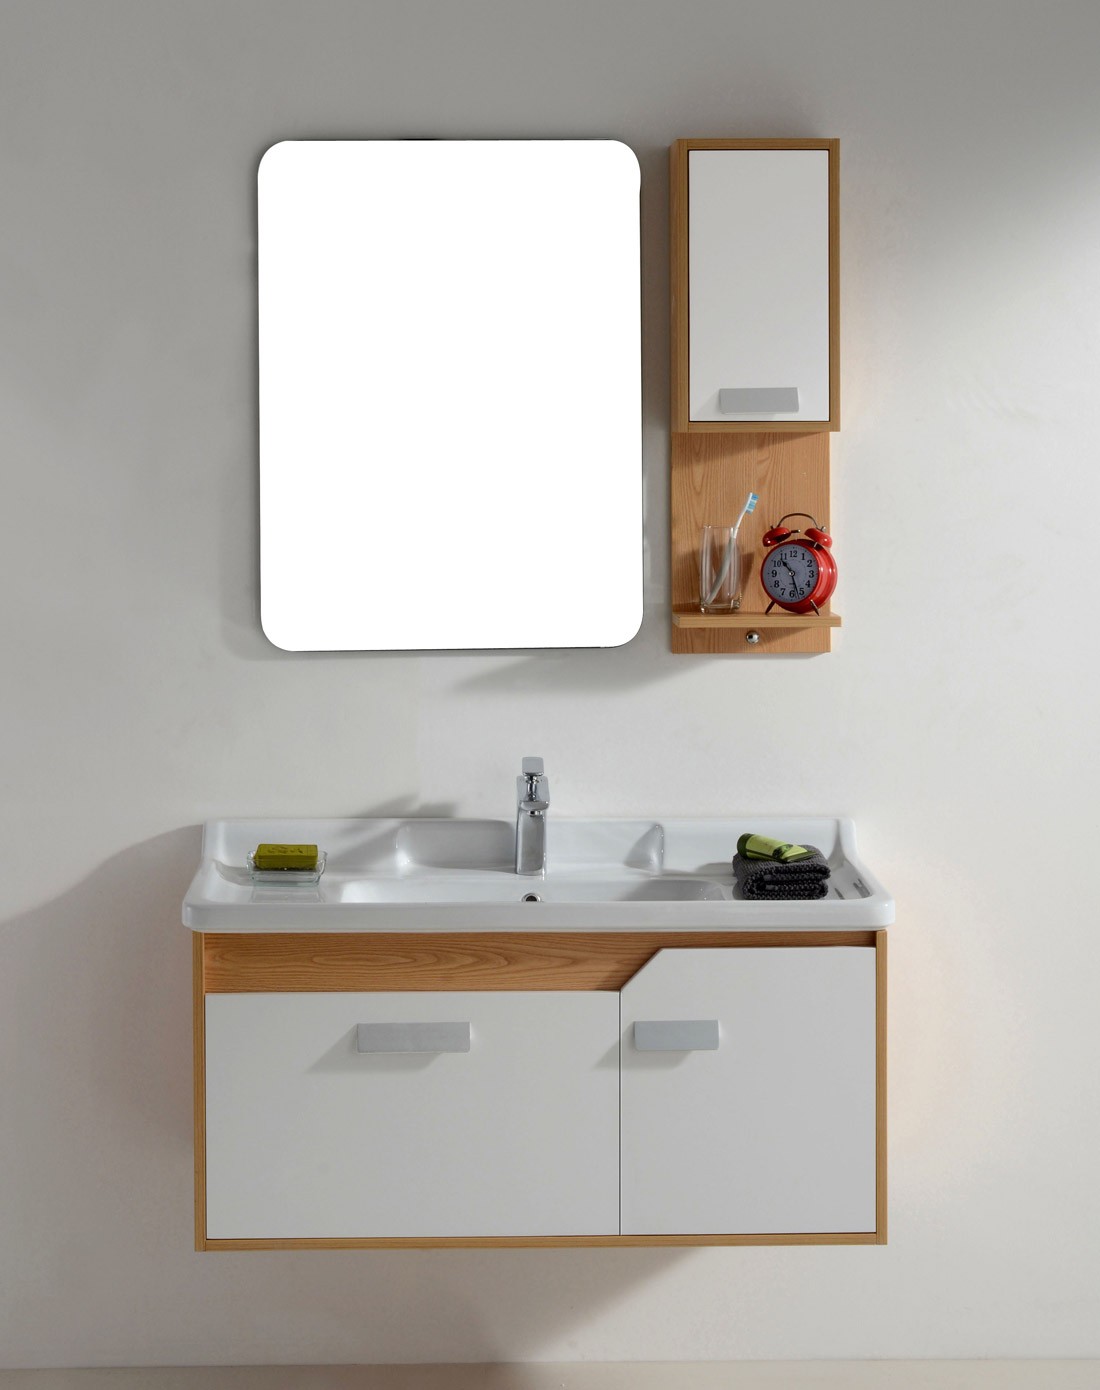 1米现代新款实木浴室柜带侧柜jy8912